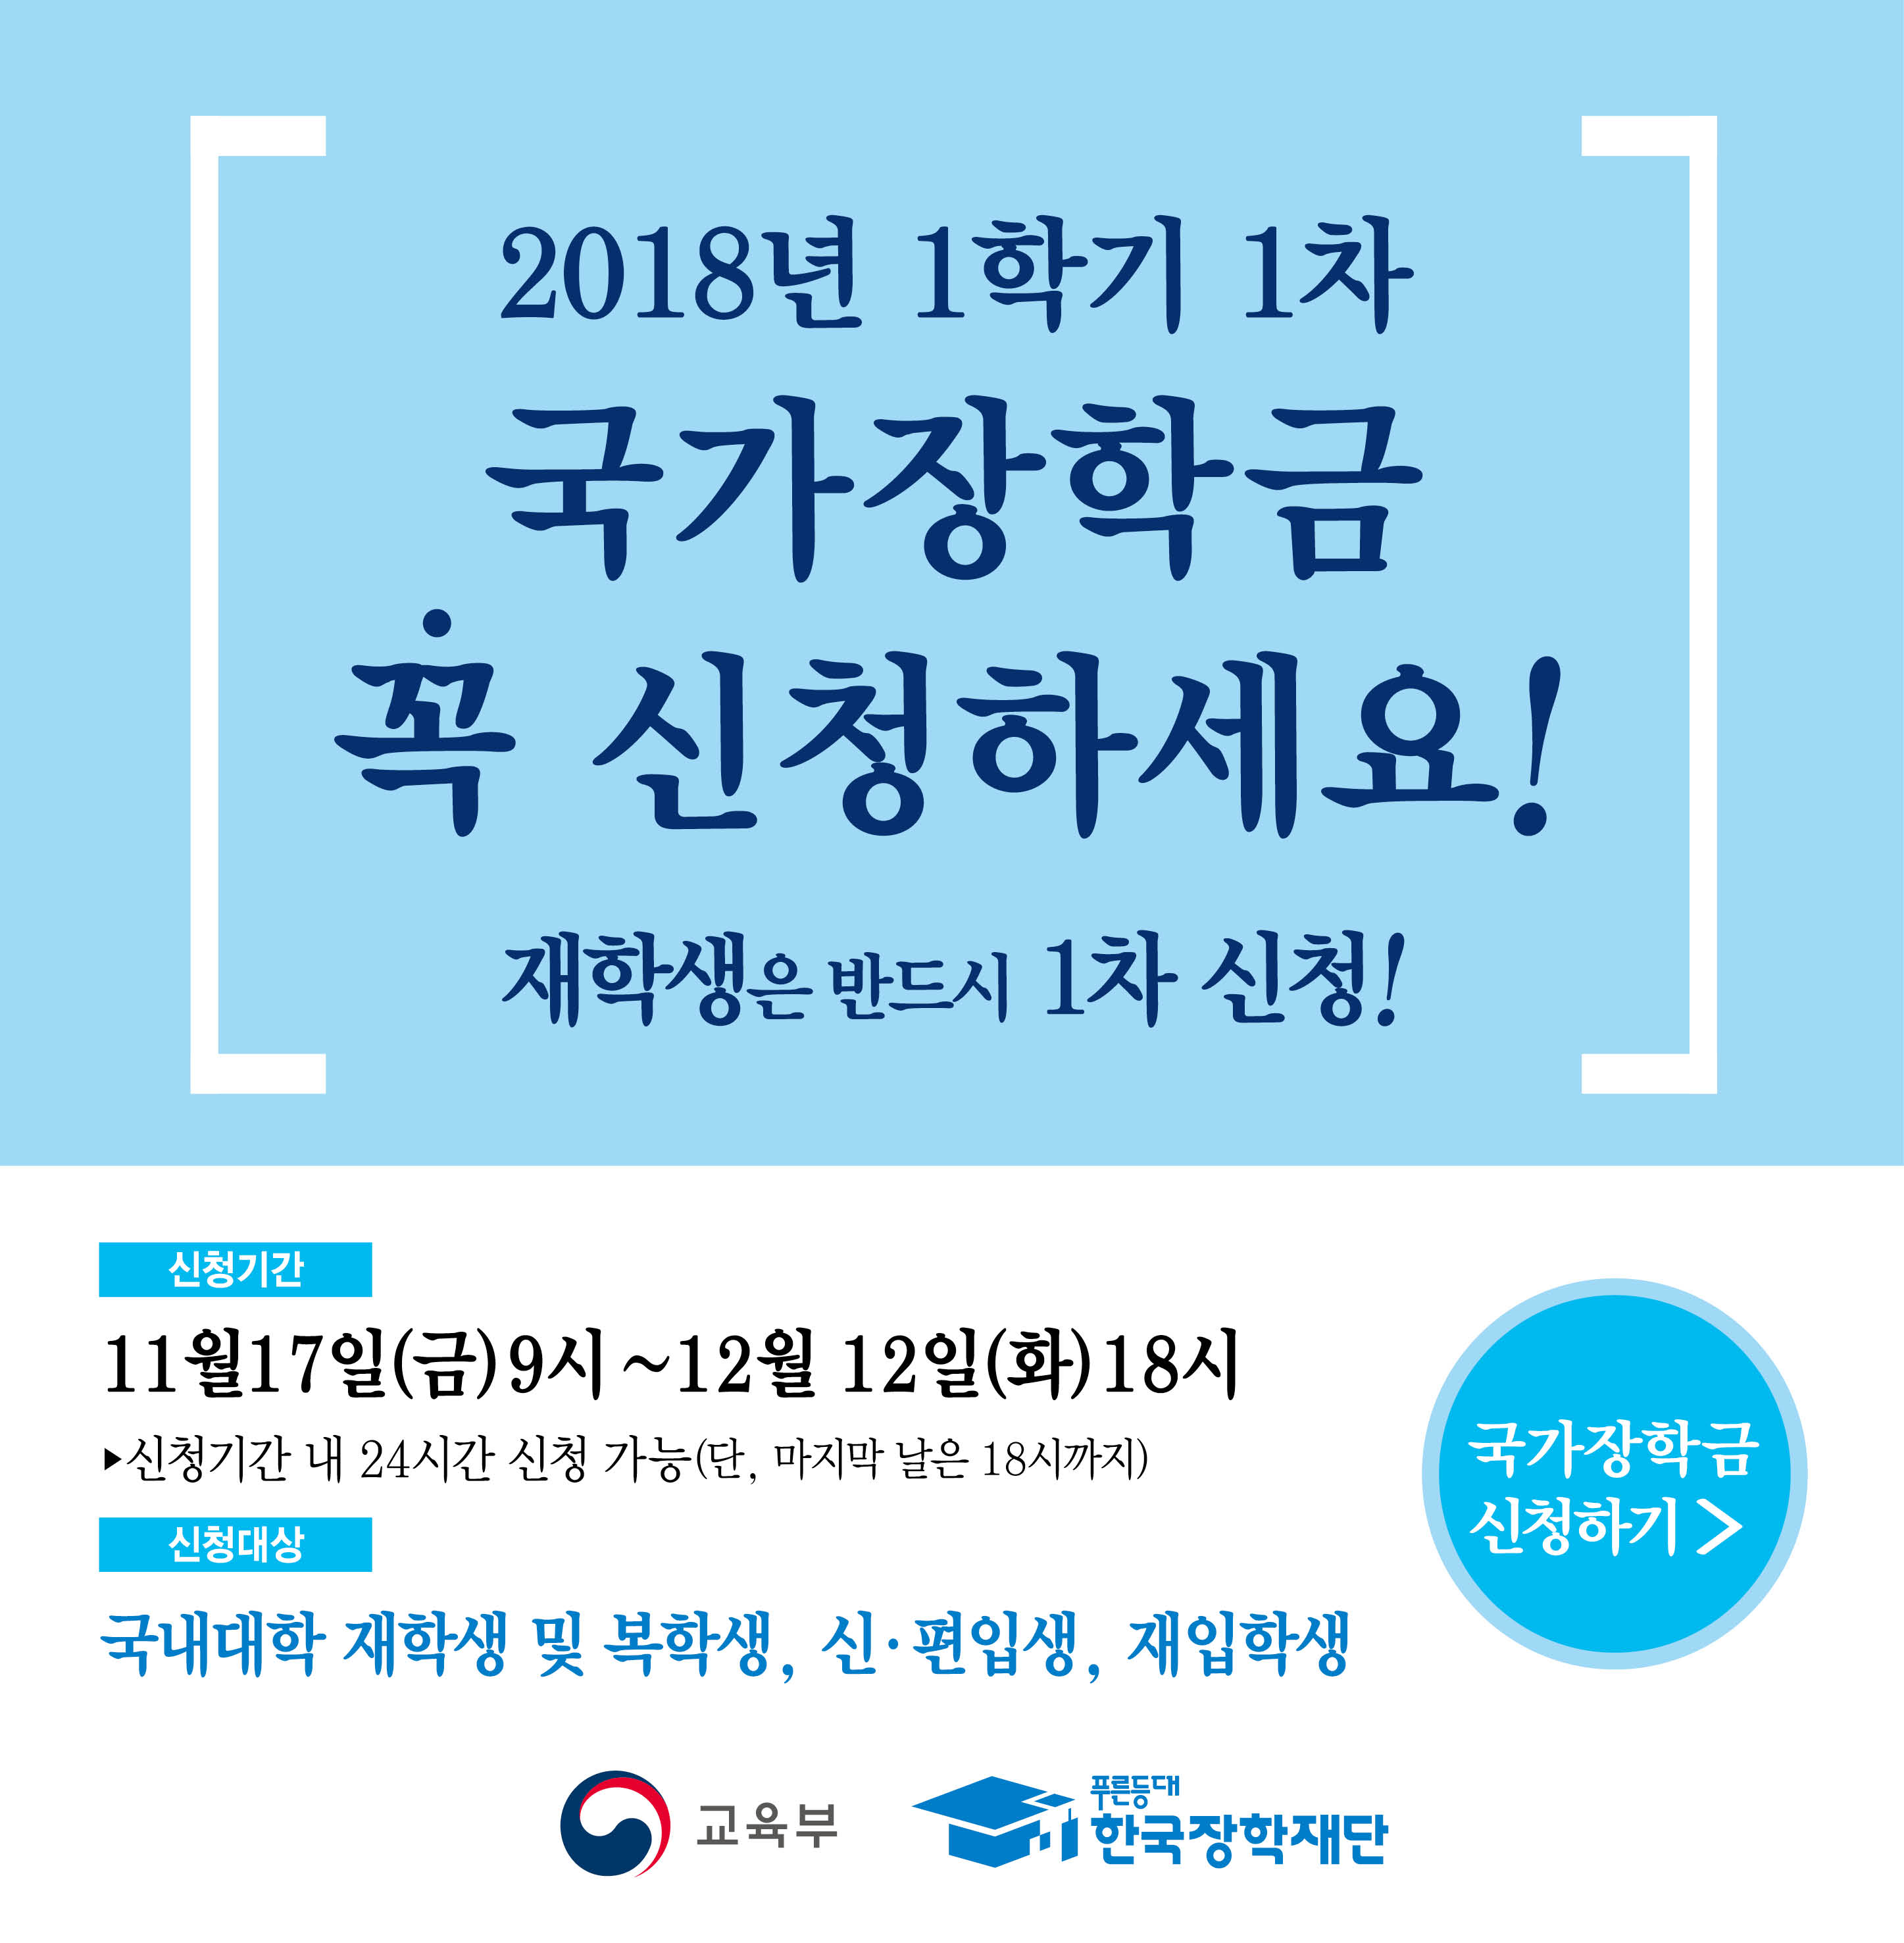 18-1학기 국가장학금 신청 팝업.jpg